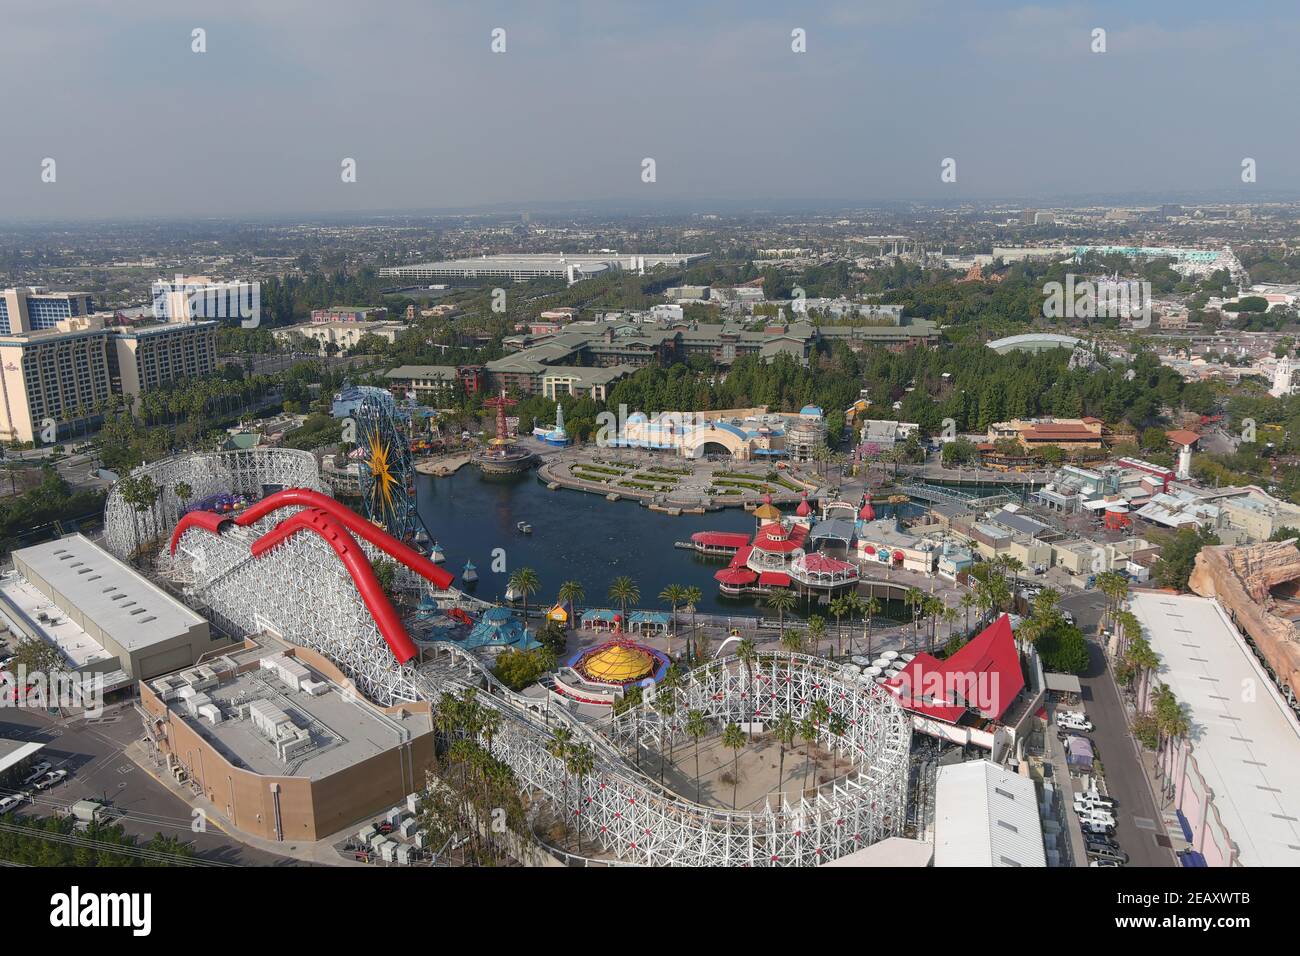 Eine Luftaufnahme von Disney California Adventure und Disneyland Park, Mittwoch, 10. Februar 2021, in Anaheim, Kalif. Stockfoto